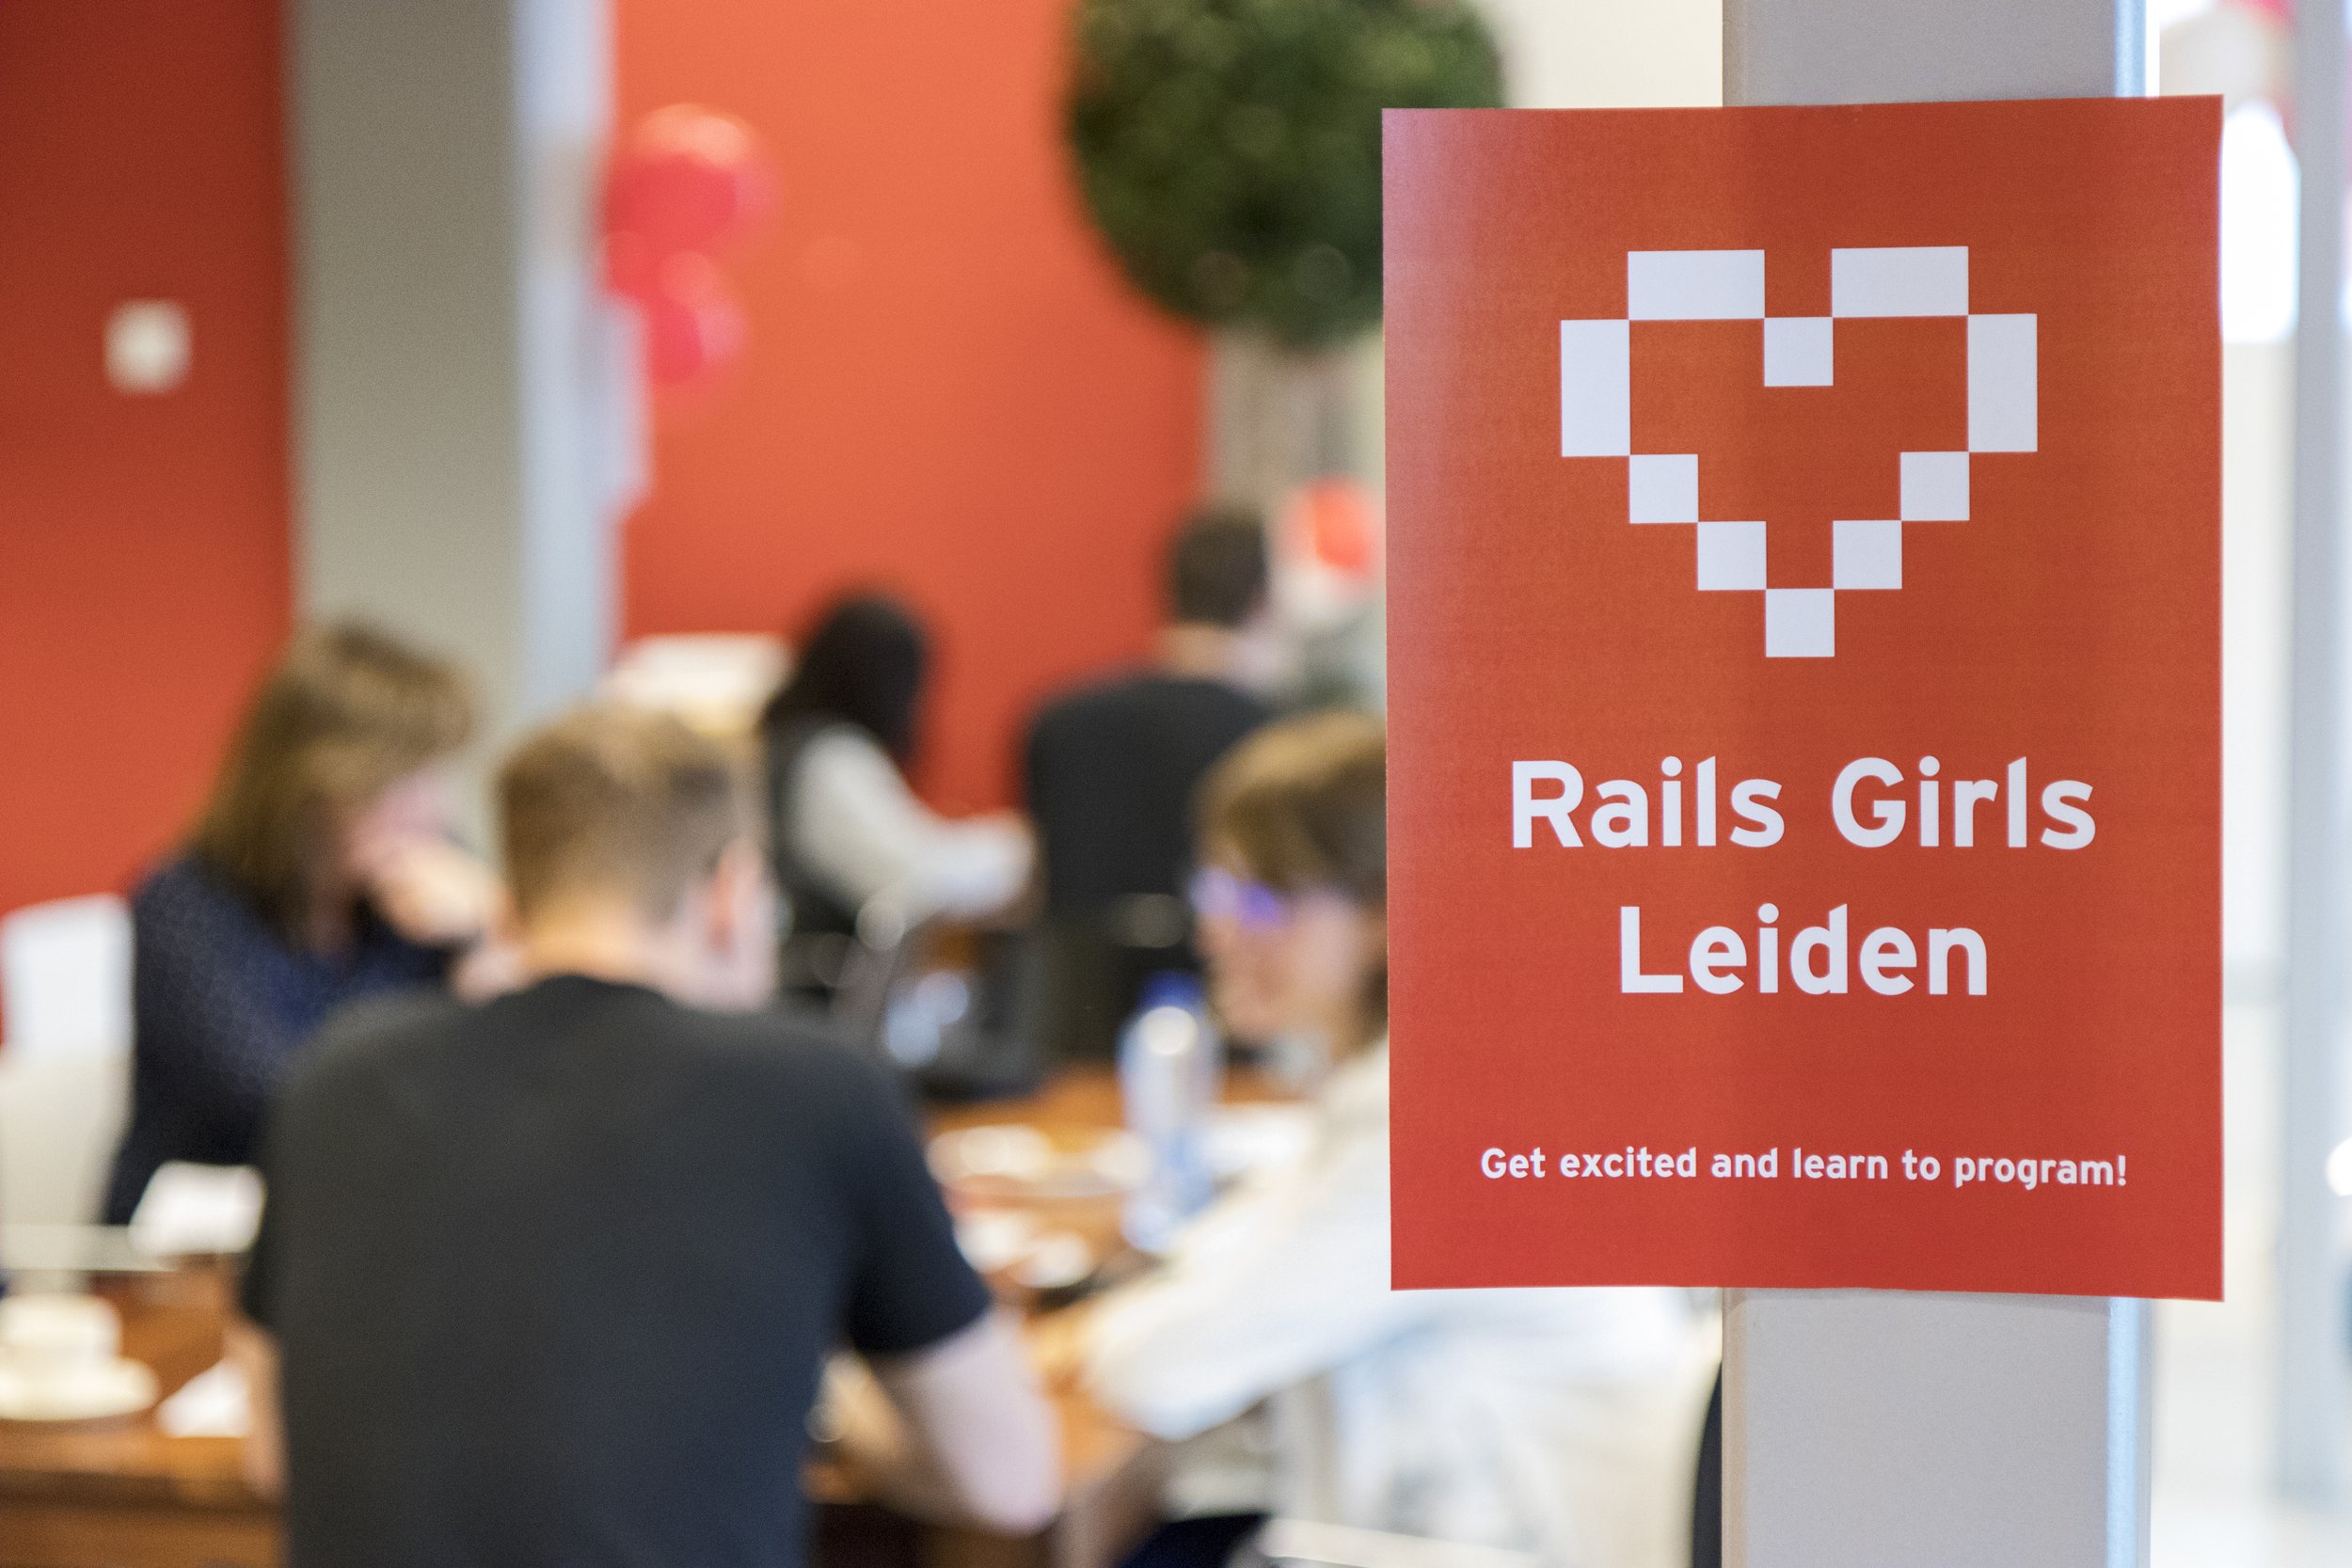 RailsGirls_Leiden_2018_69.jpg